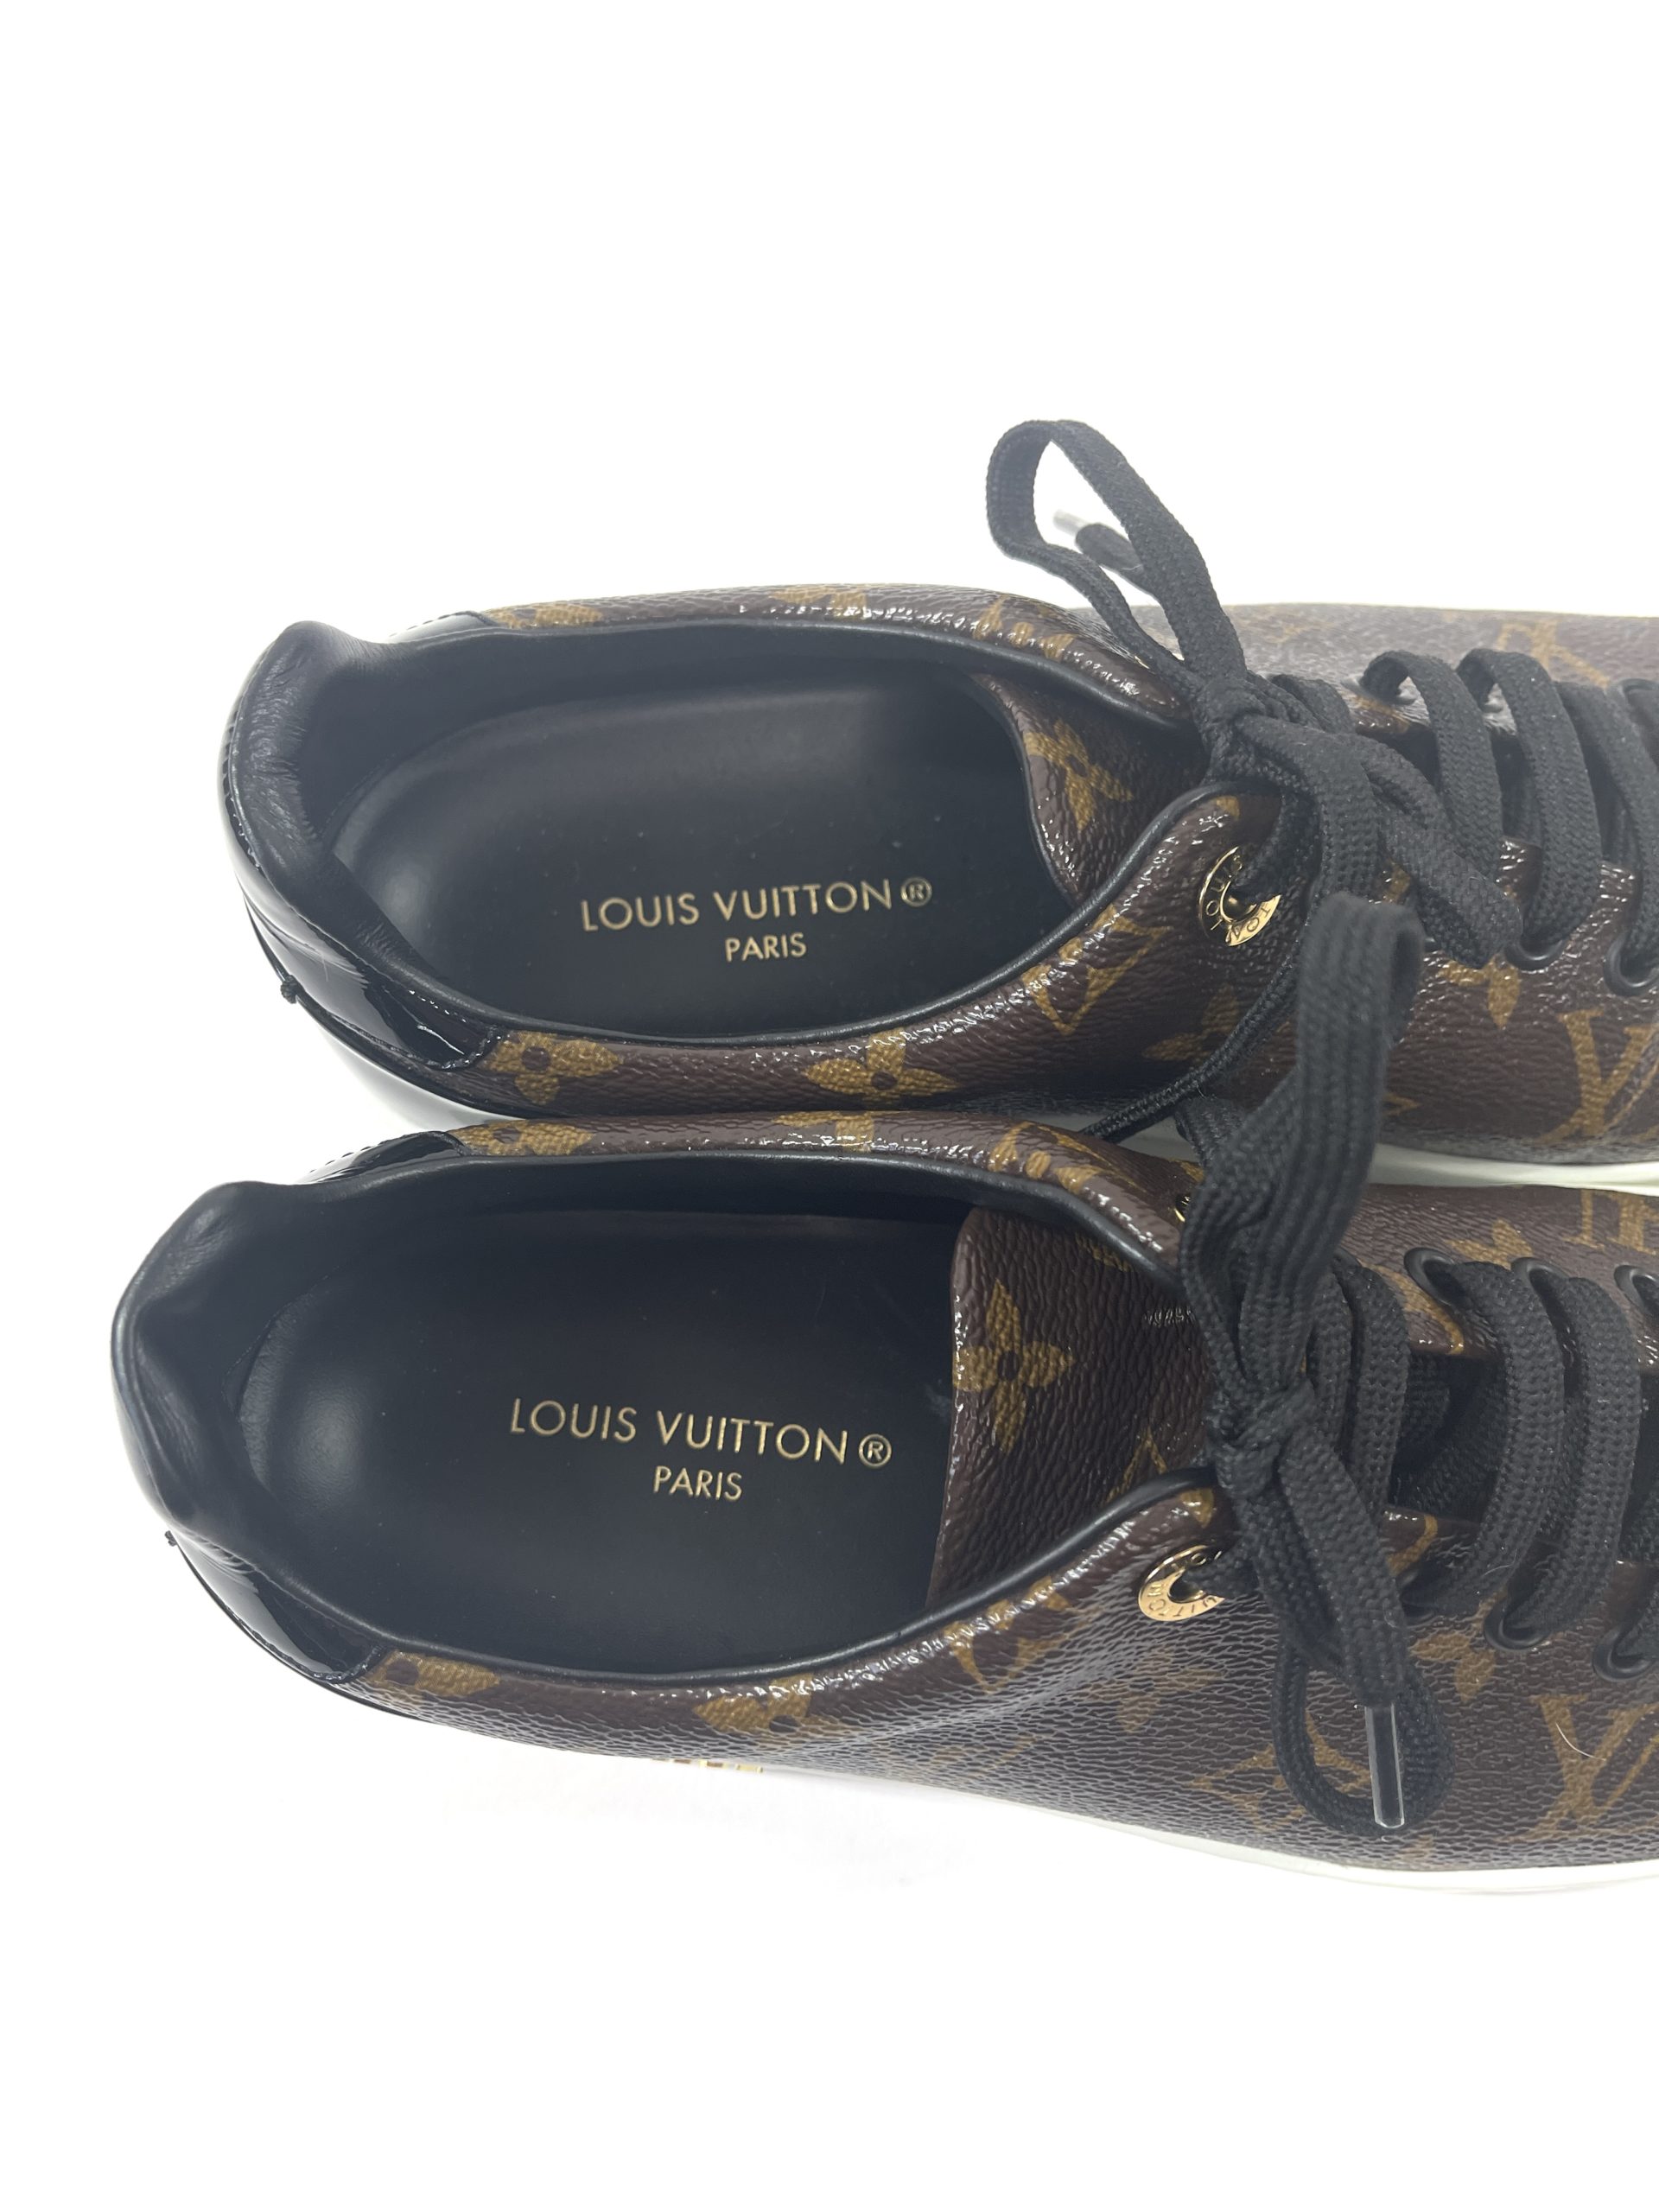 Authentic Louis Vuitton Sz 35 Denim LV Monogram/Leather Flip Flop Sandals